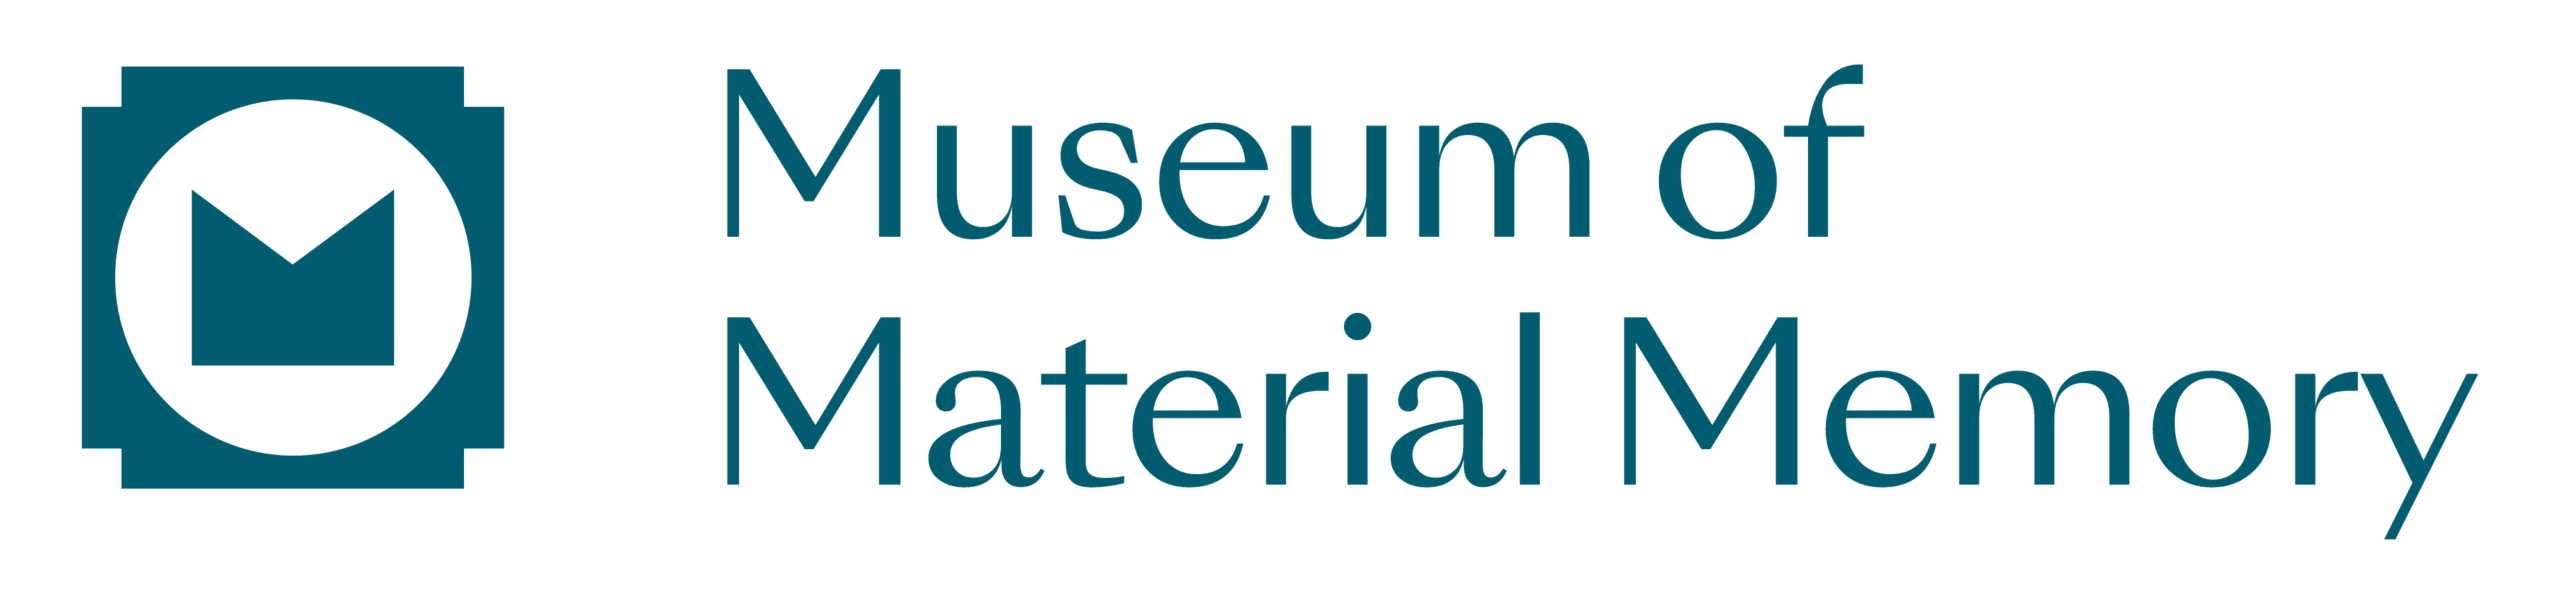 Museum of Material Memory